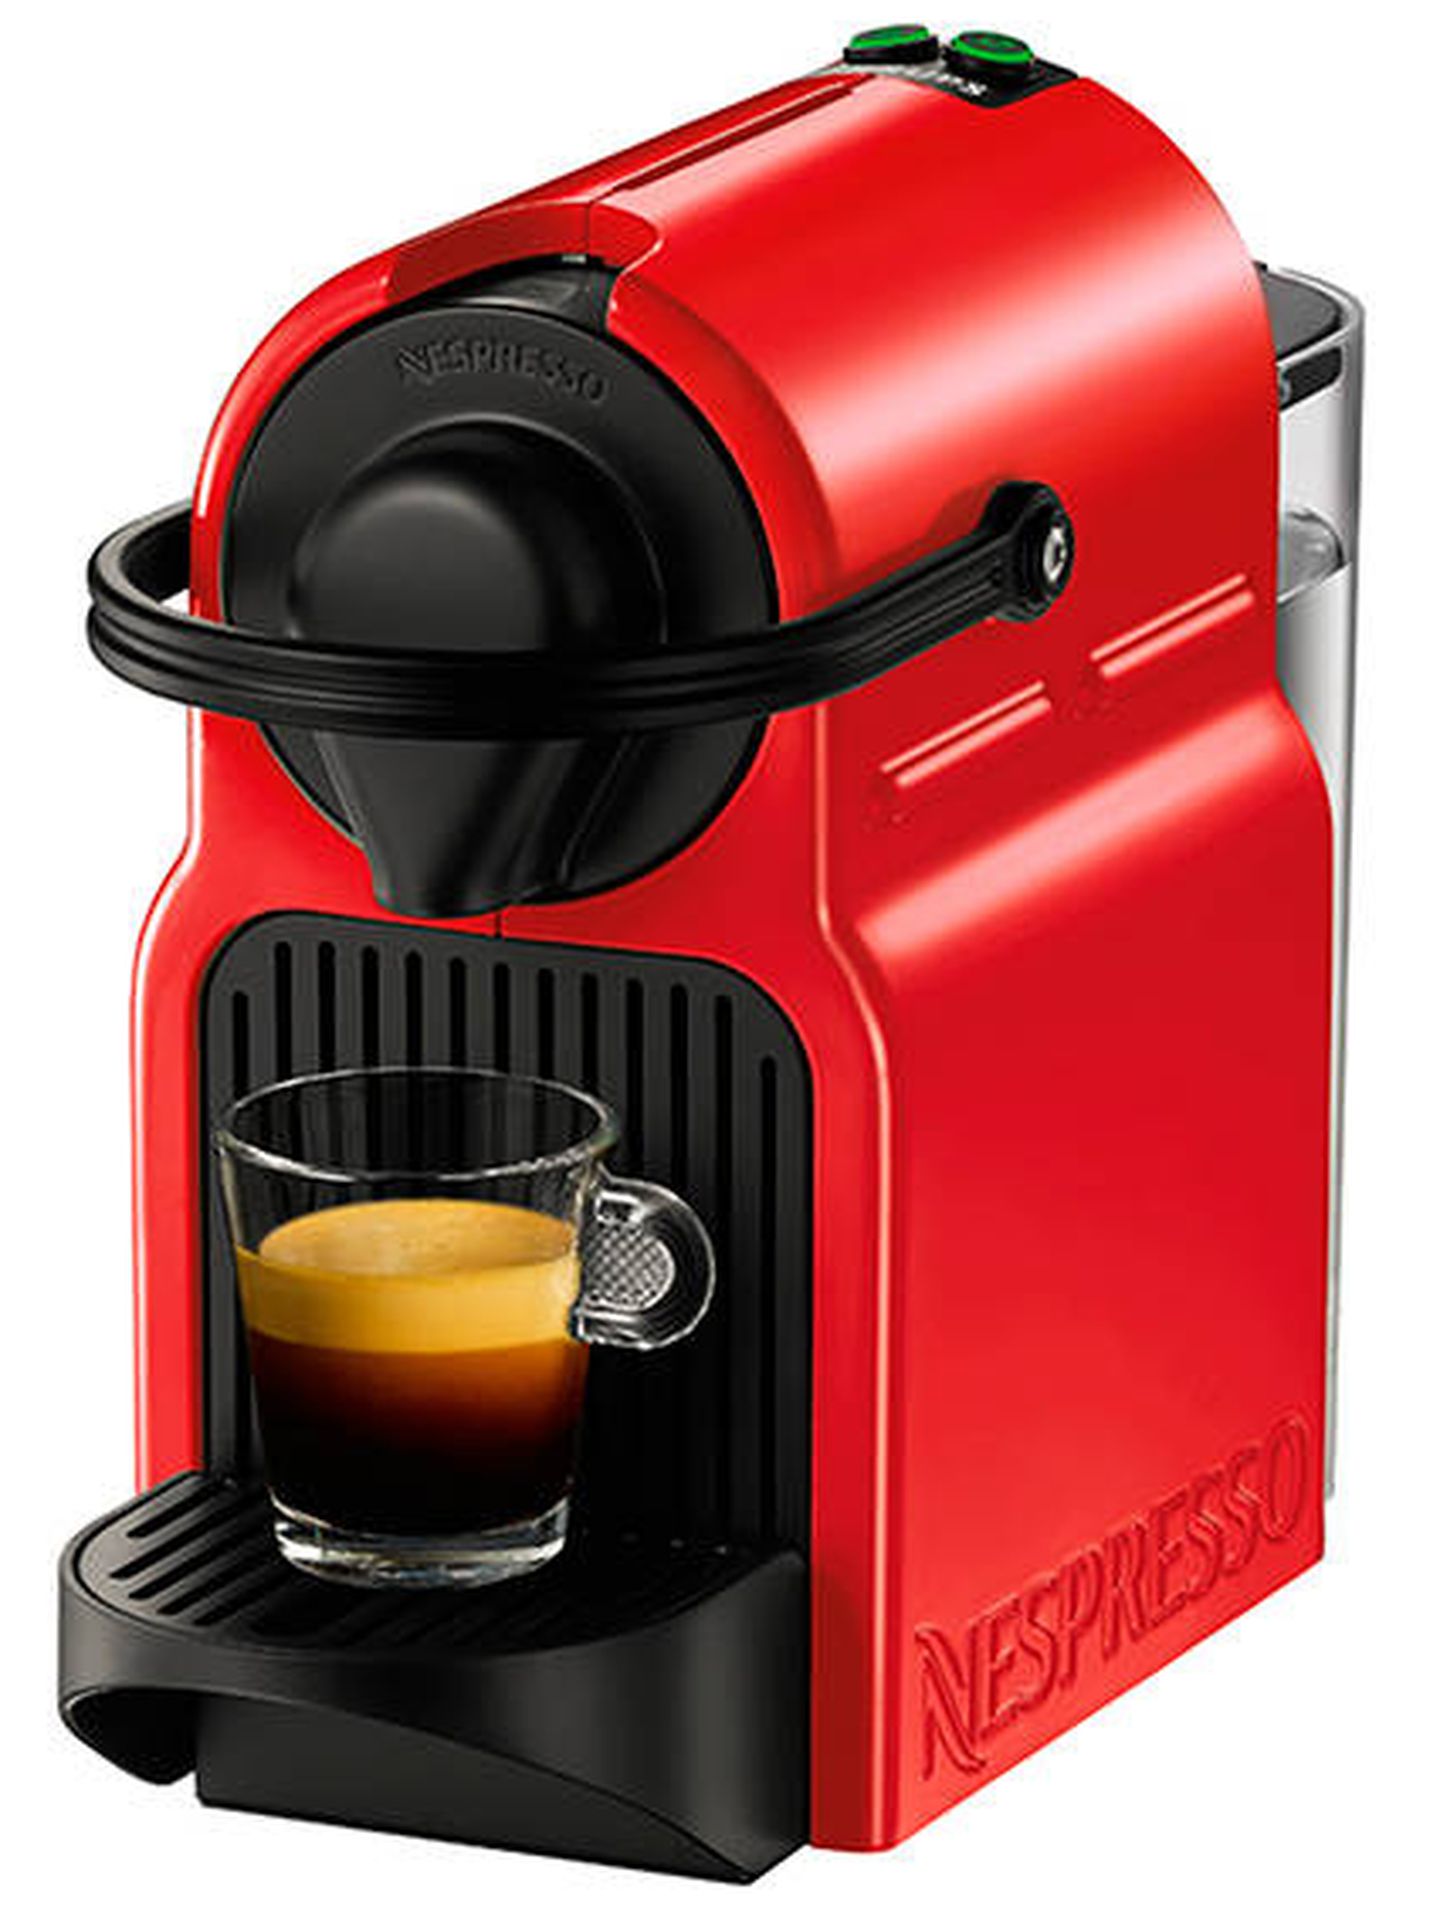 Cafetera espresso automática Krups Inissia XN1005 para cápsulas Nespresso: 69 € (antes 99 €). Descuento 30%